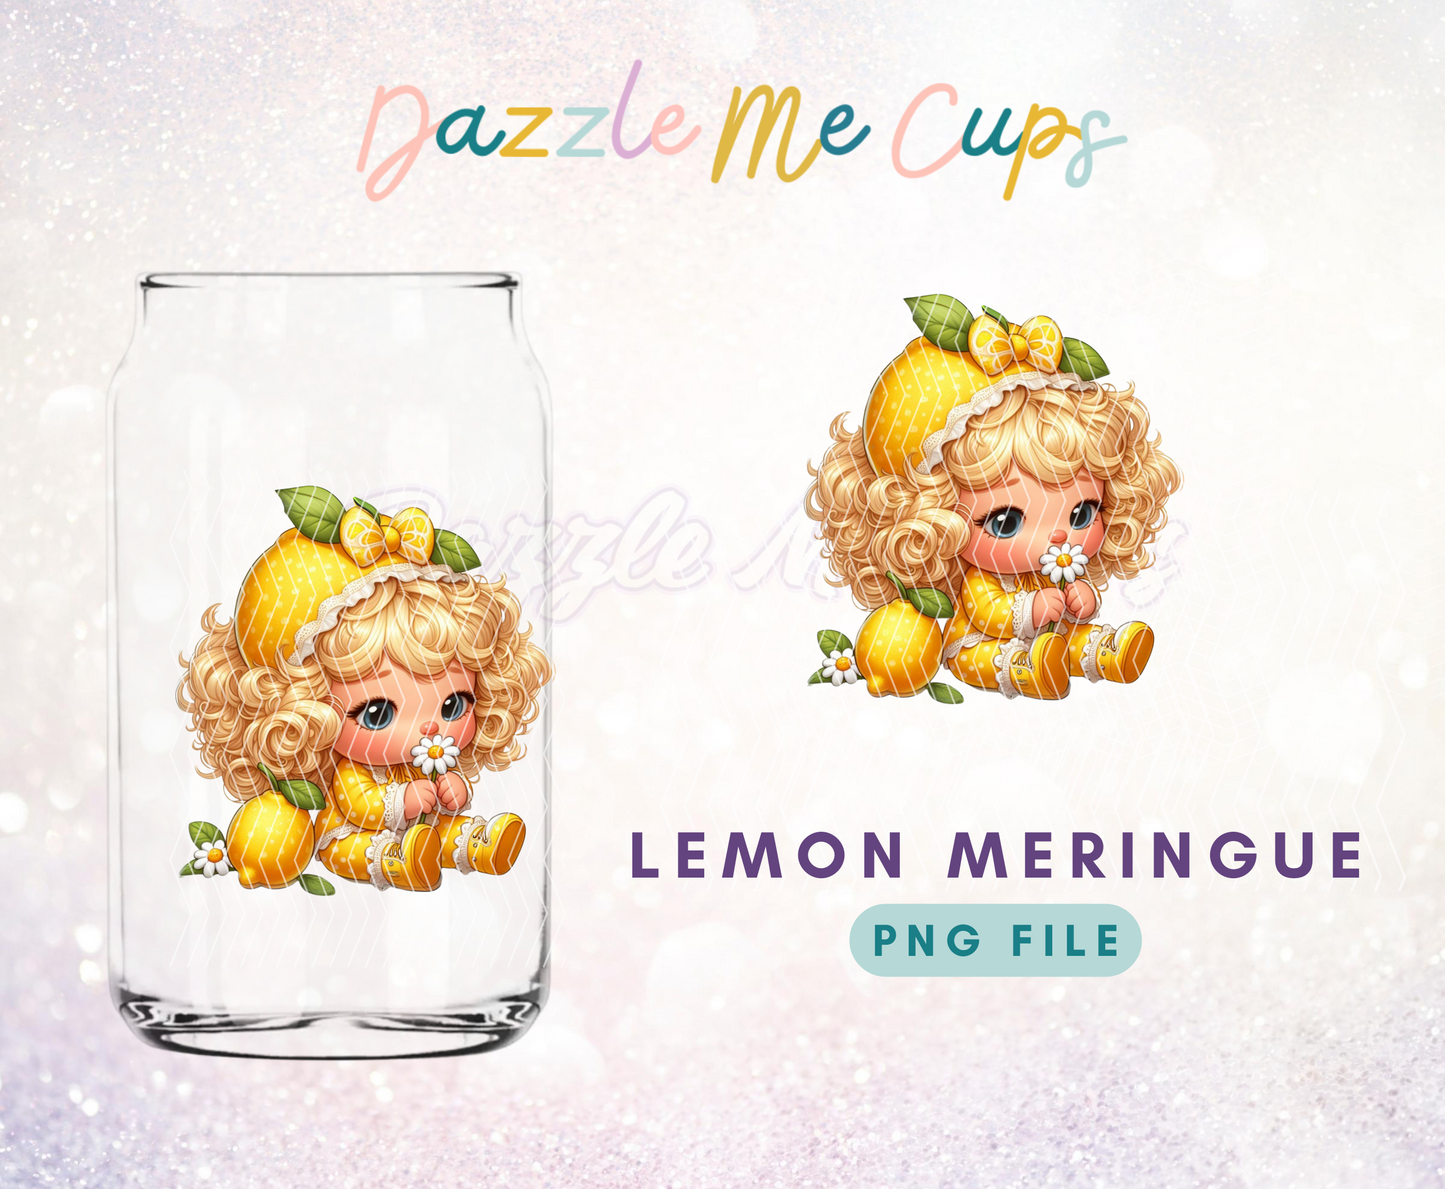 Lemon meringue PNG